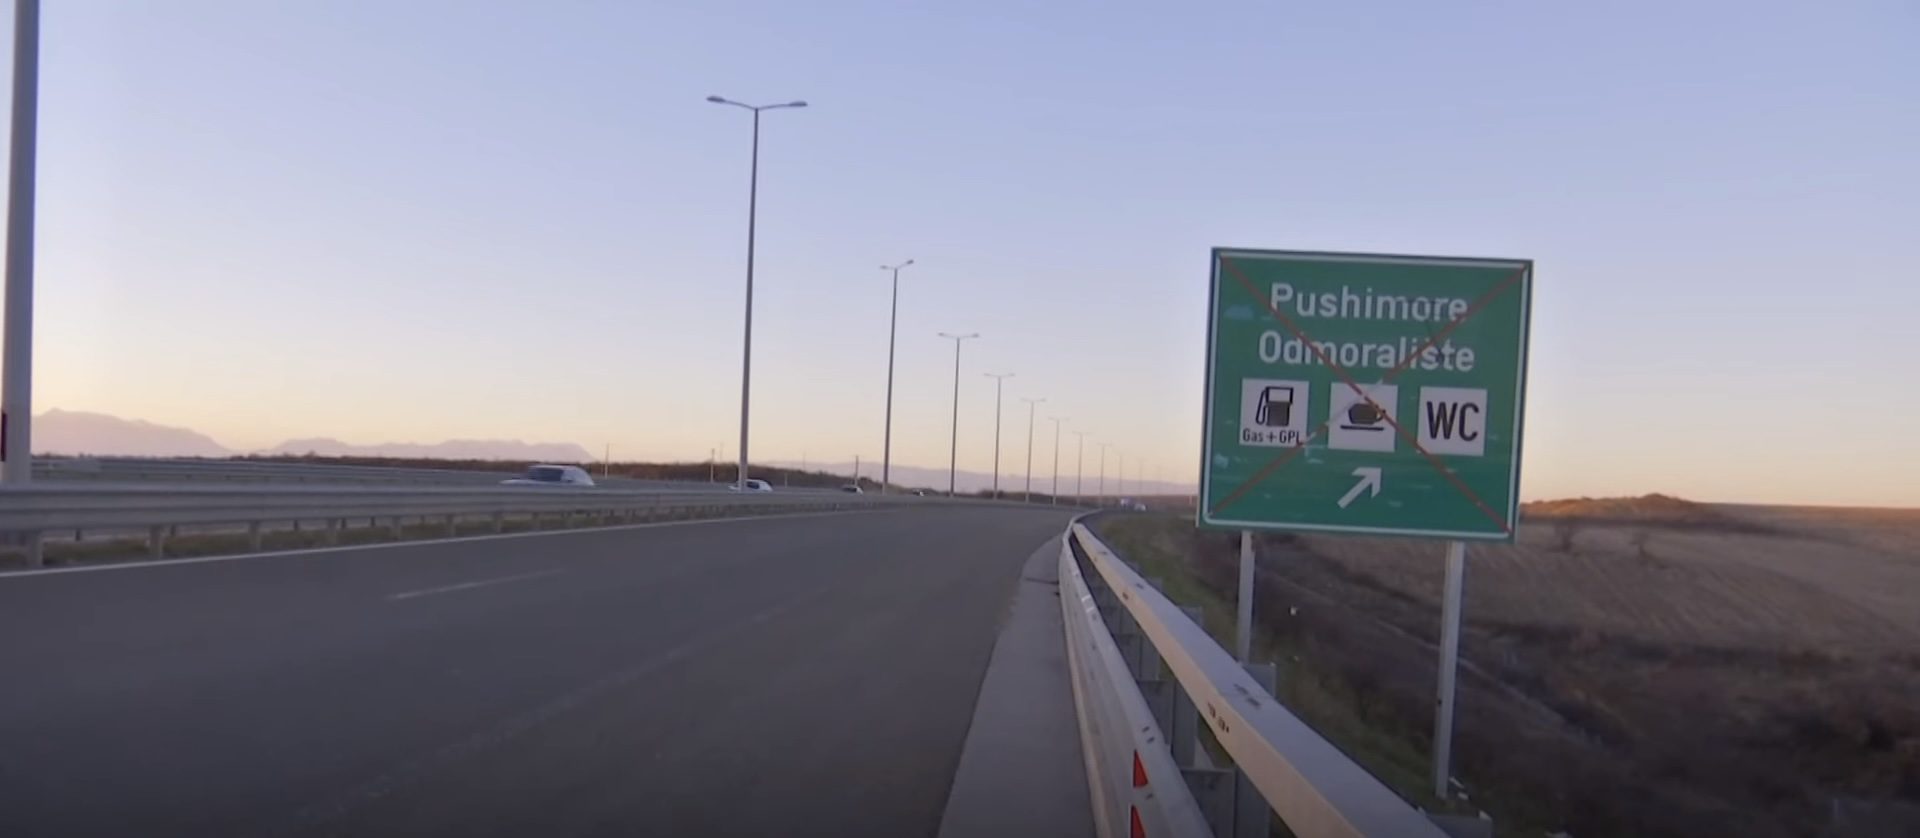 Autostradat e Kosovës, pa pika karburanti, pa pushimore dhe pa sinjalistikë